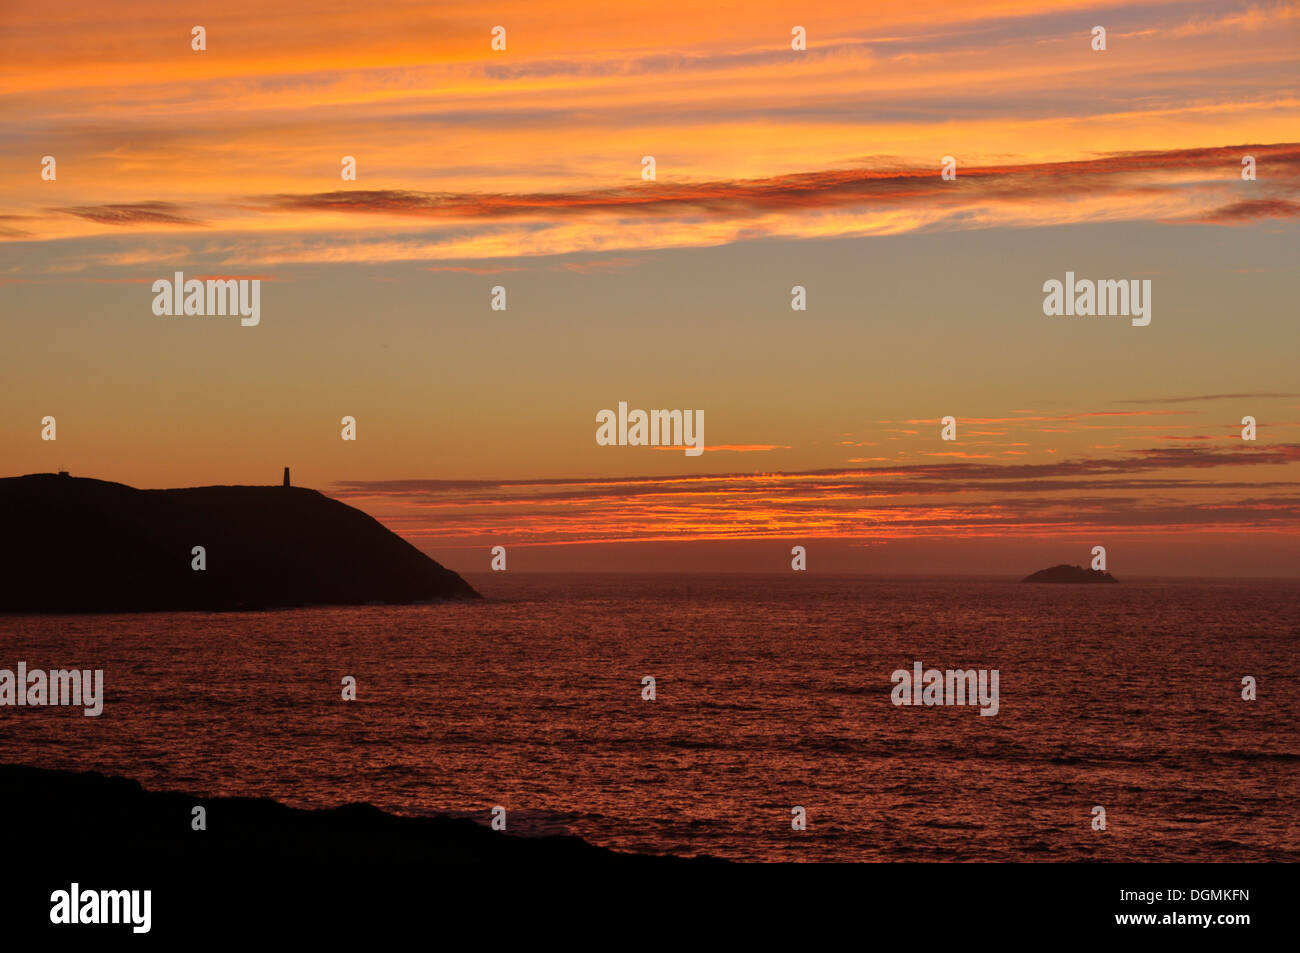 Cornouailles du nord - coucher de soleil sur silhouette Point pas-à-pas - orange rouge et bleu sur cloudscape crimson sea - twilight Banque D'Images